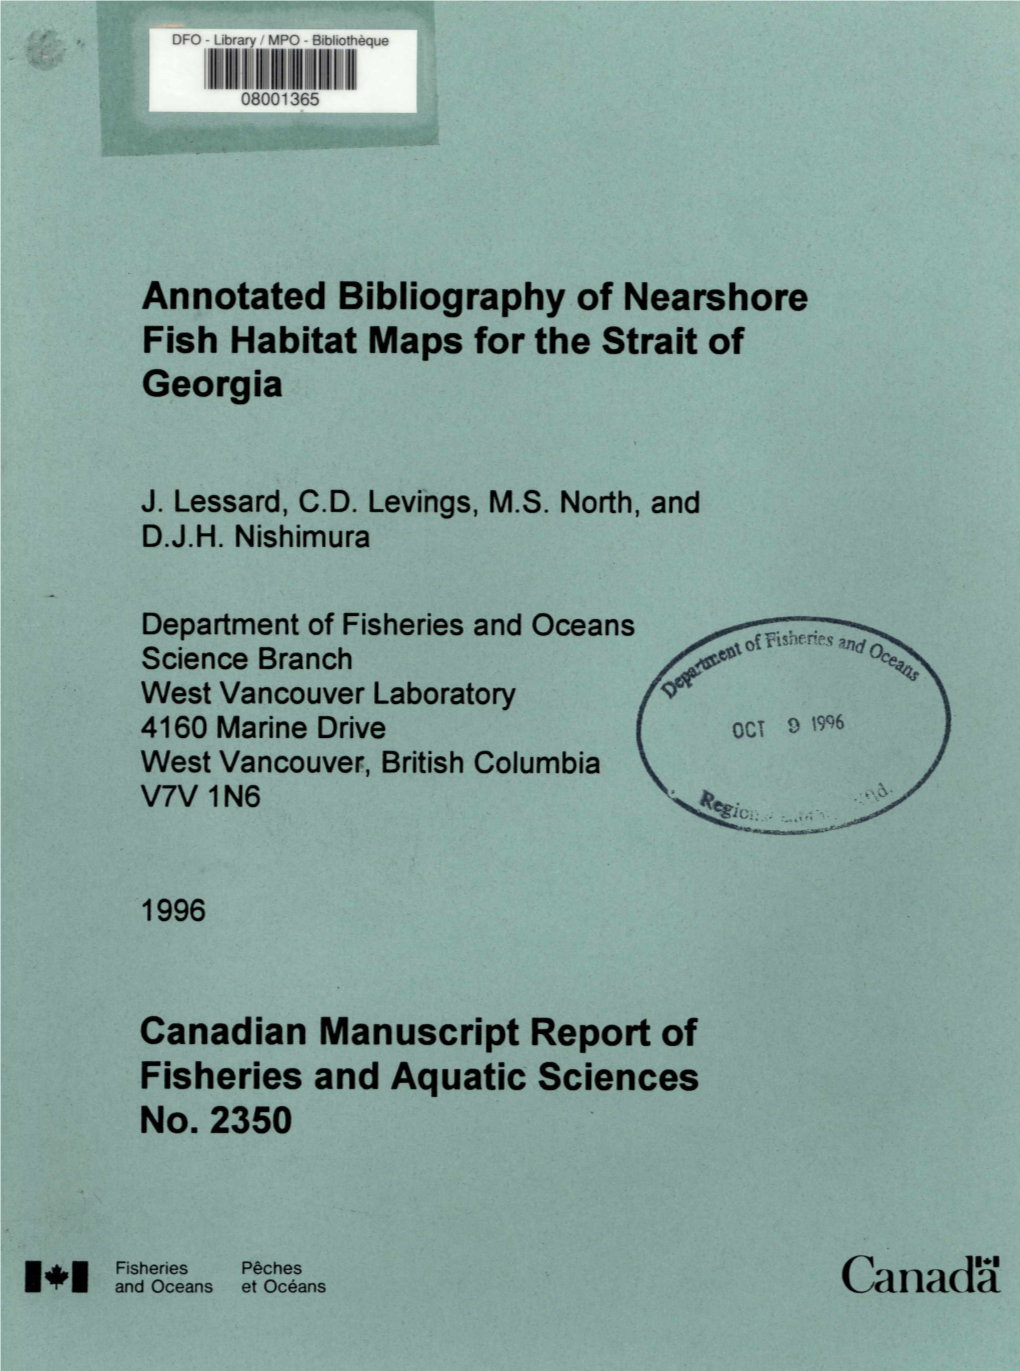 Canada Canadian Manuscript Report of Fisheries and Aquatic Sciences